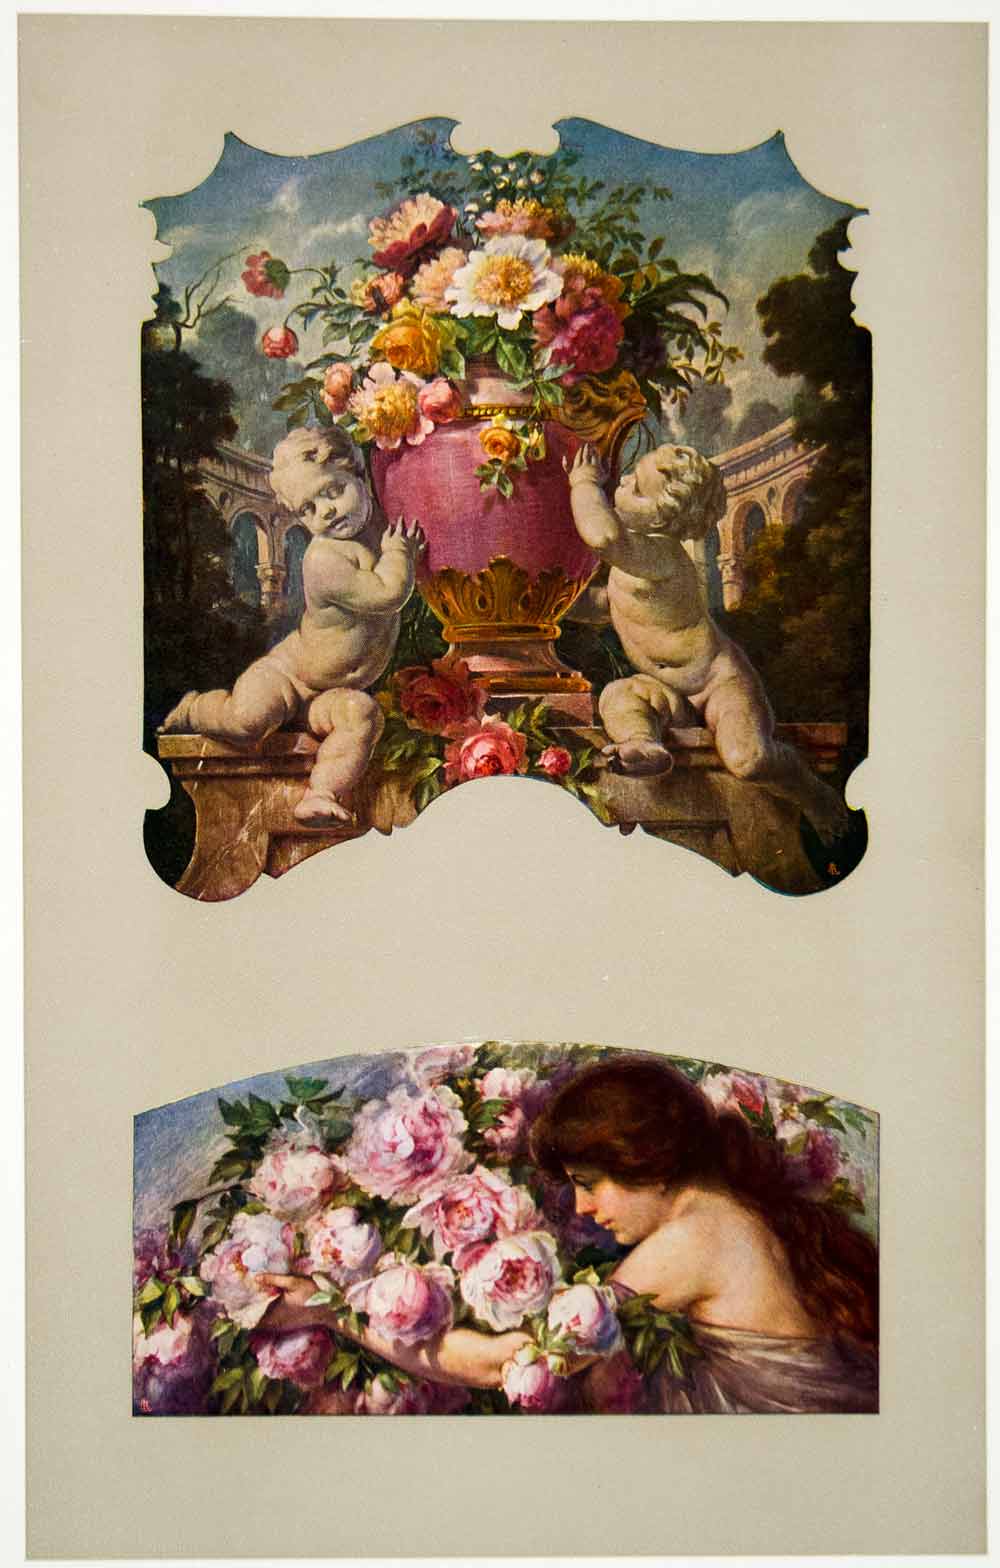 1917 Photolithograph Art Nouveau Nude Putti Flowers Urn Giorgio Ceragioli MDA4